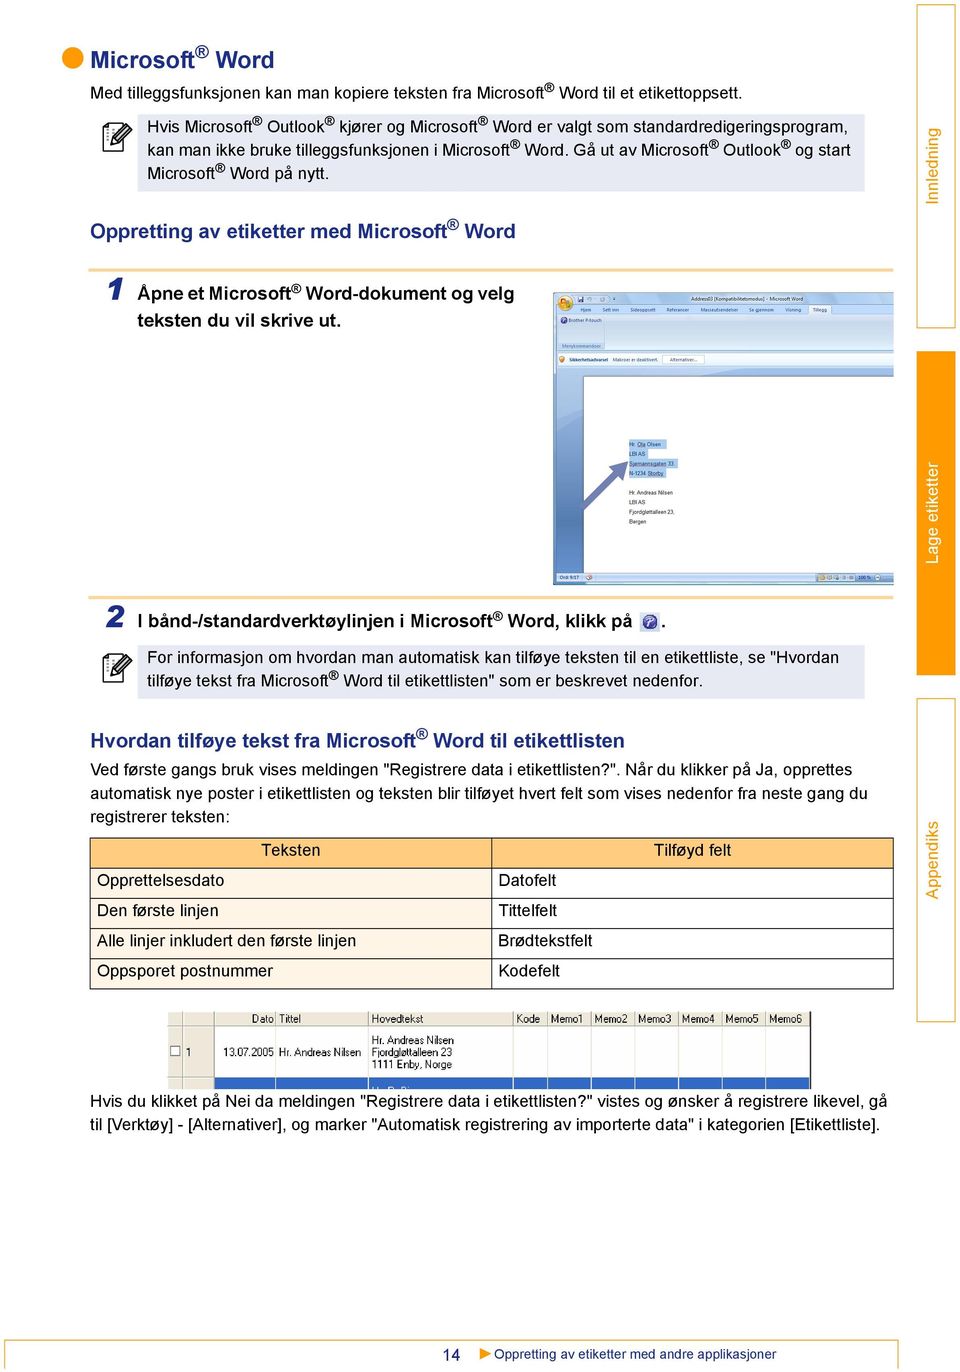 Gå ut av Microsoft Outlook og start Microsoft Word på nytt. Oppretting av etiketter med Microsoft Word 1 Åpne et Microsoft Word-dokument og velg teksten du vil skrive ut.